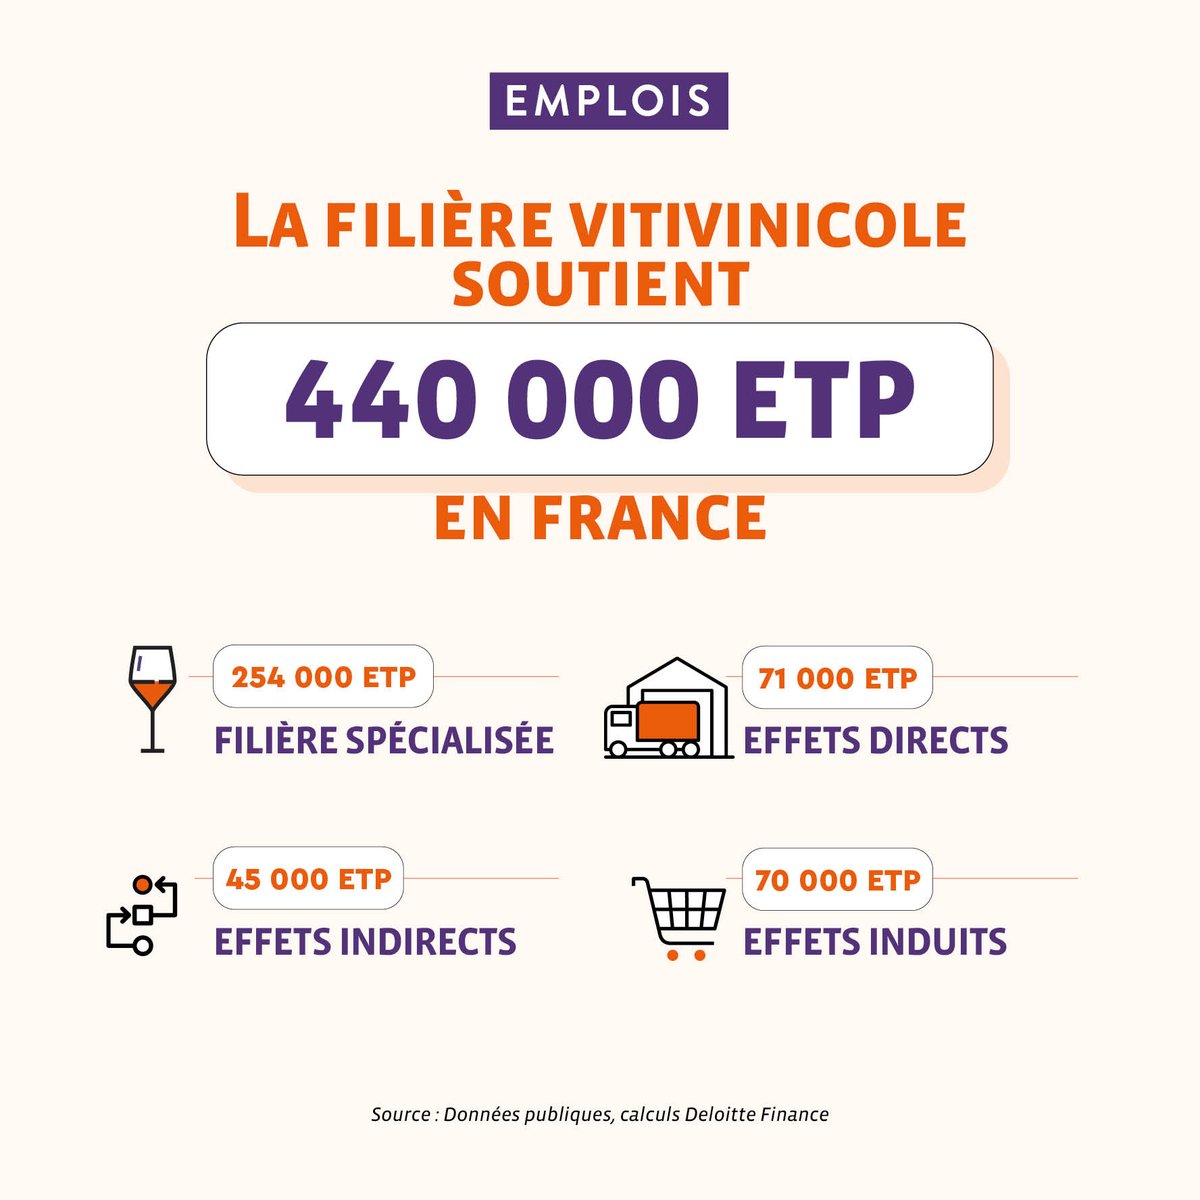 La filière vitivinicole soutien l'emploi en France en employant 440 000 équivalents temps plein 💼 Plus de chiffres 👉 ow.ly/TT7c50QIlwH